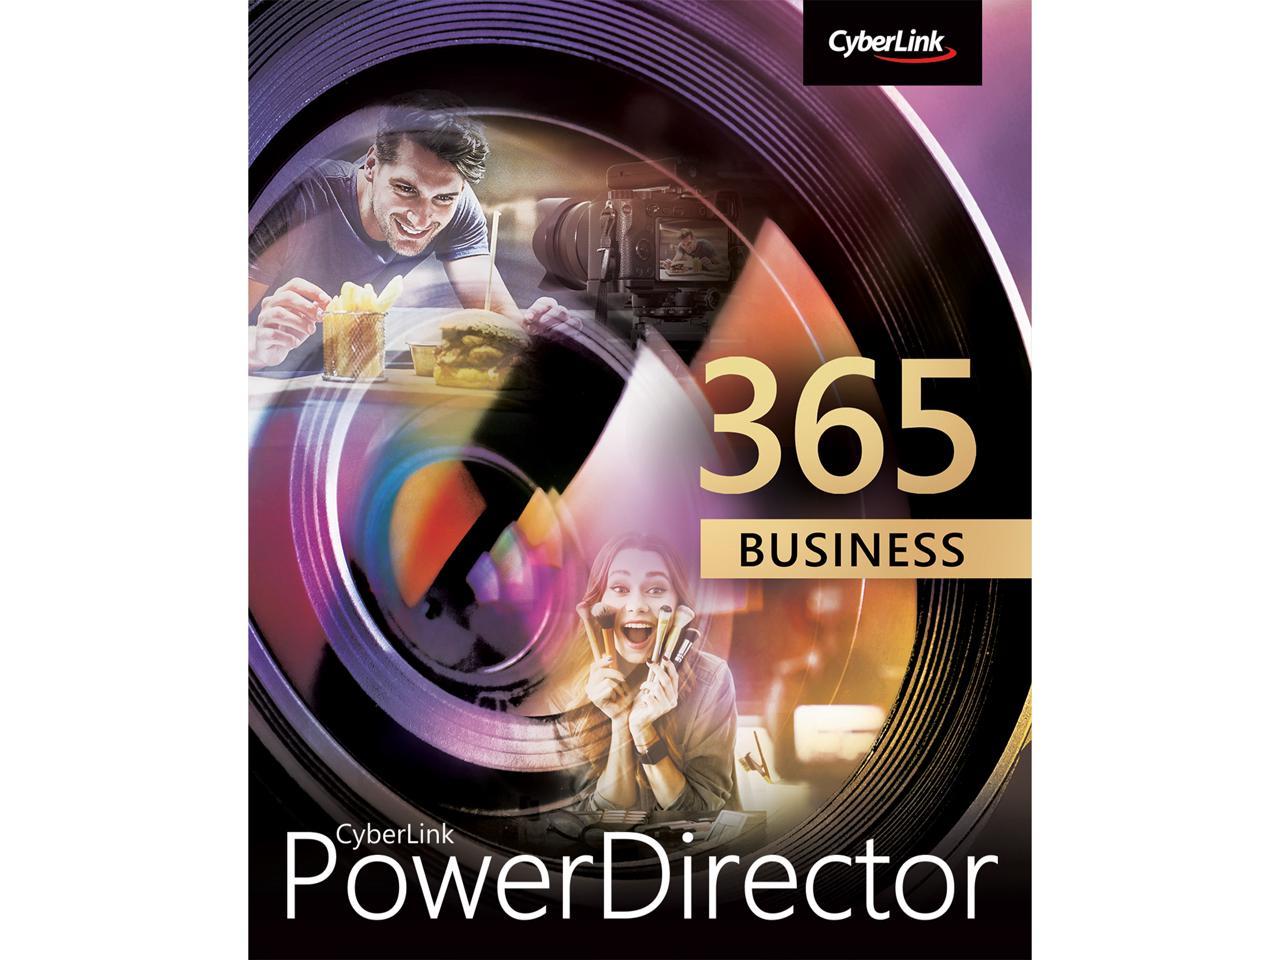 powerdirector 365 review